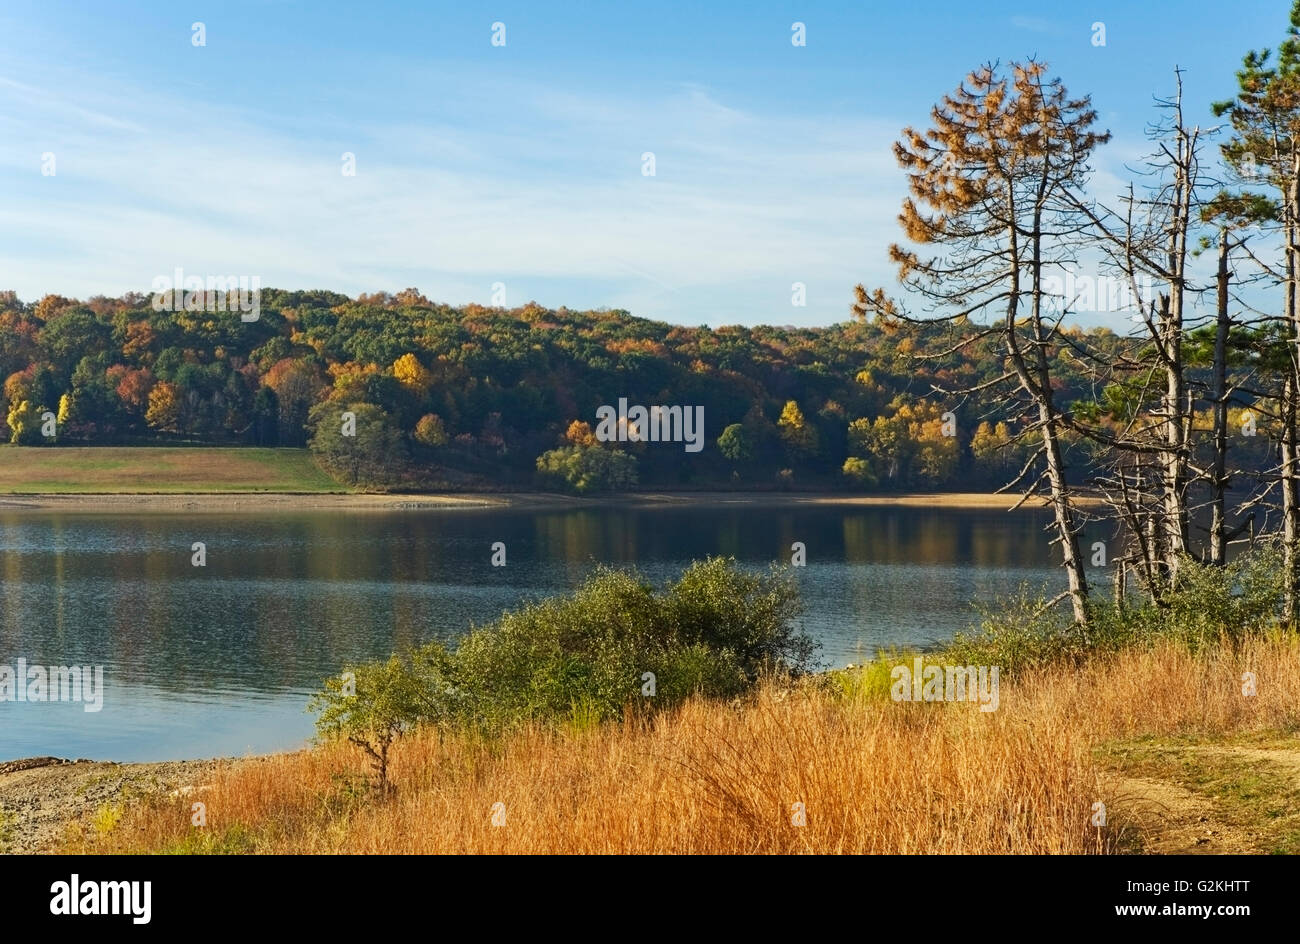 USA NY Round Valley Park Autumn Landscape Stock Photo